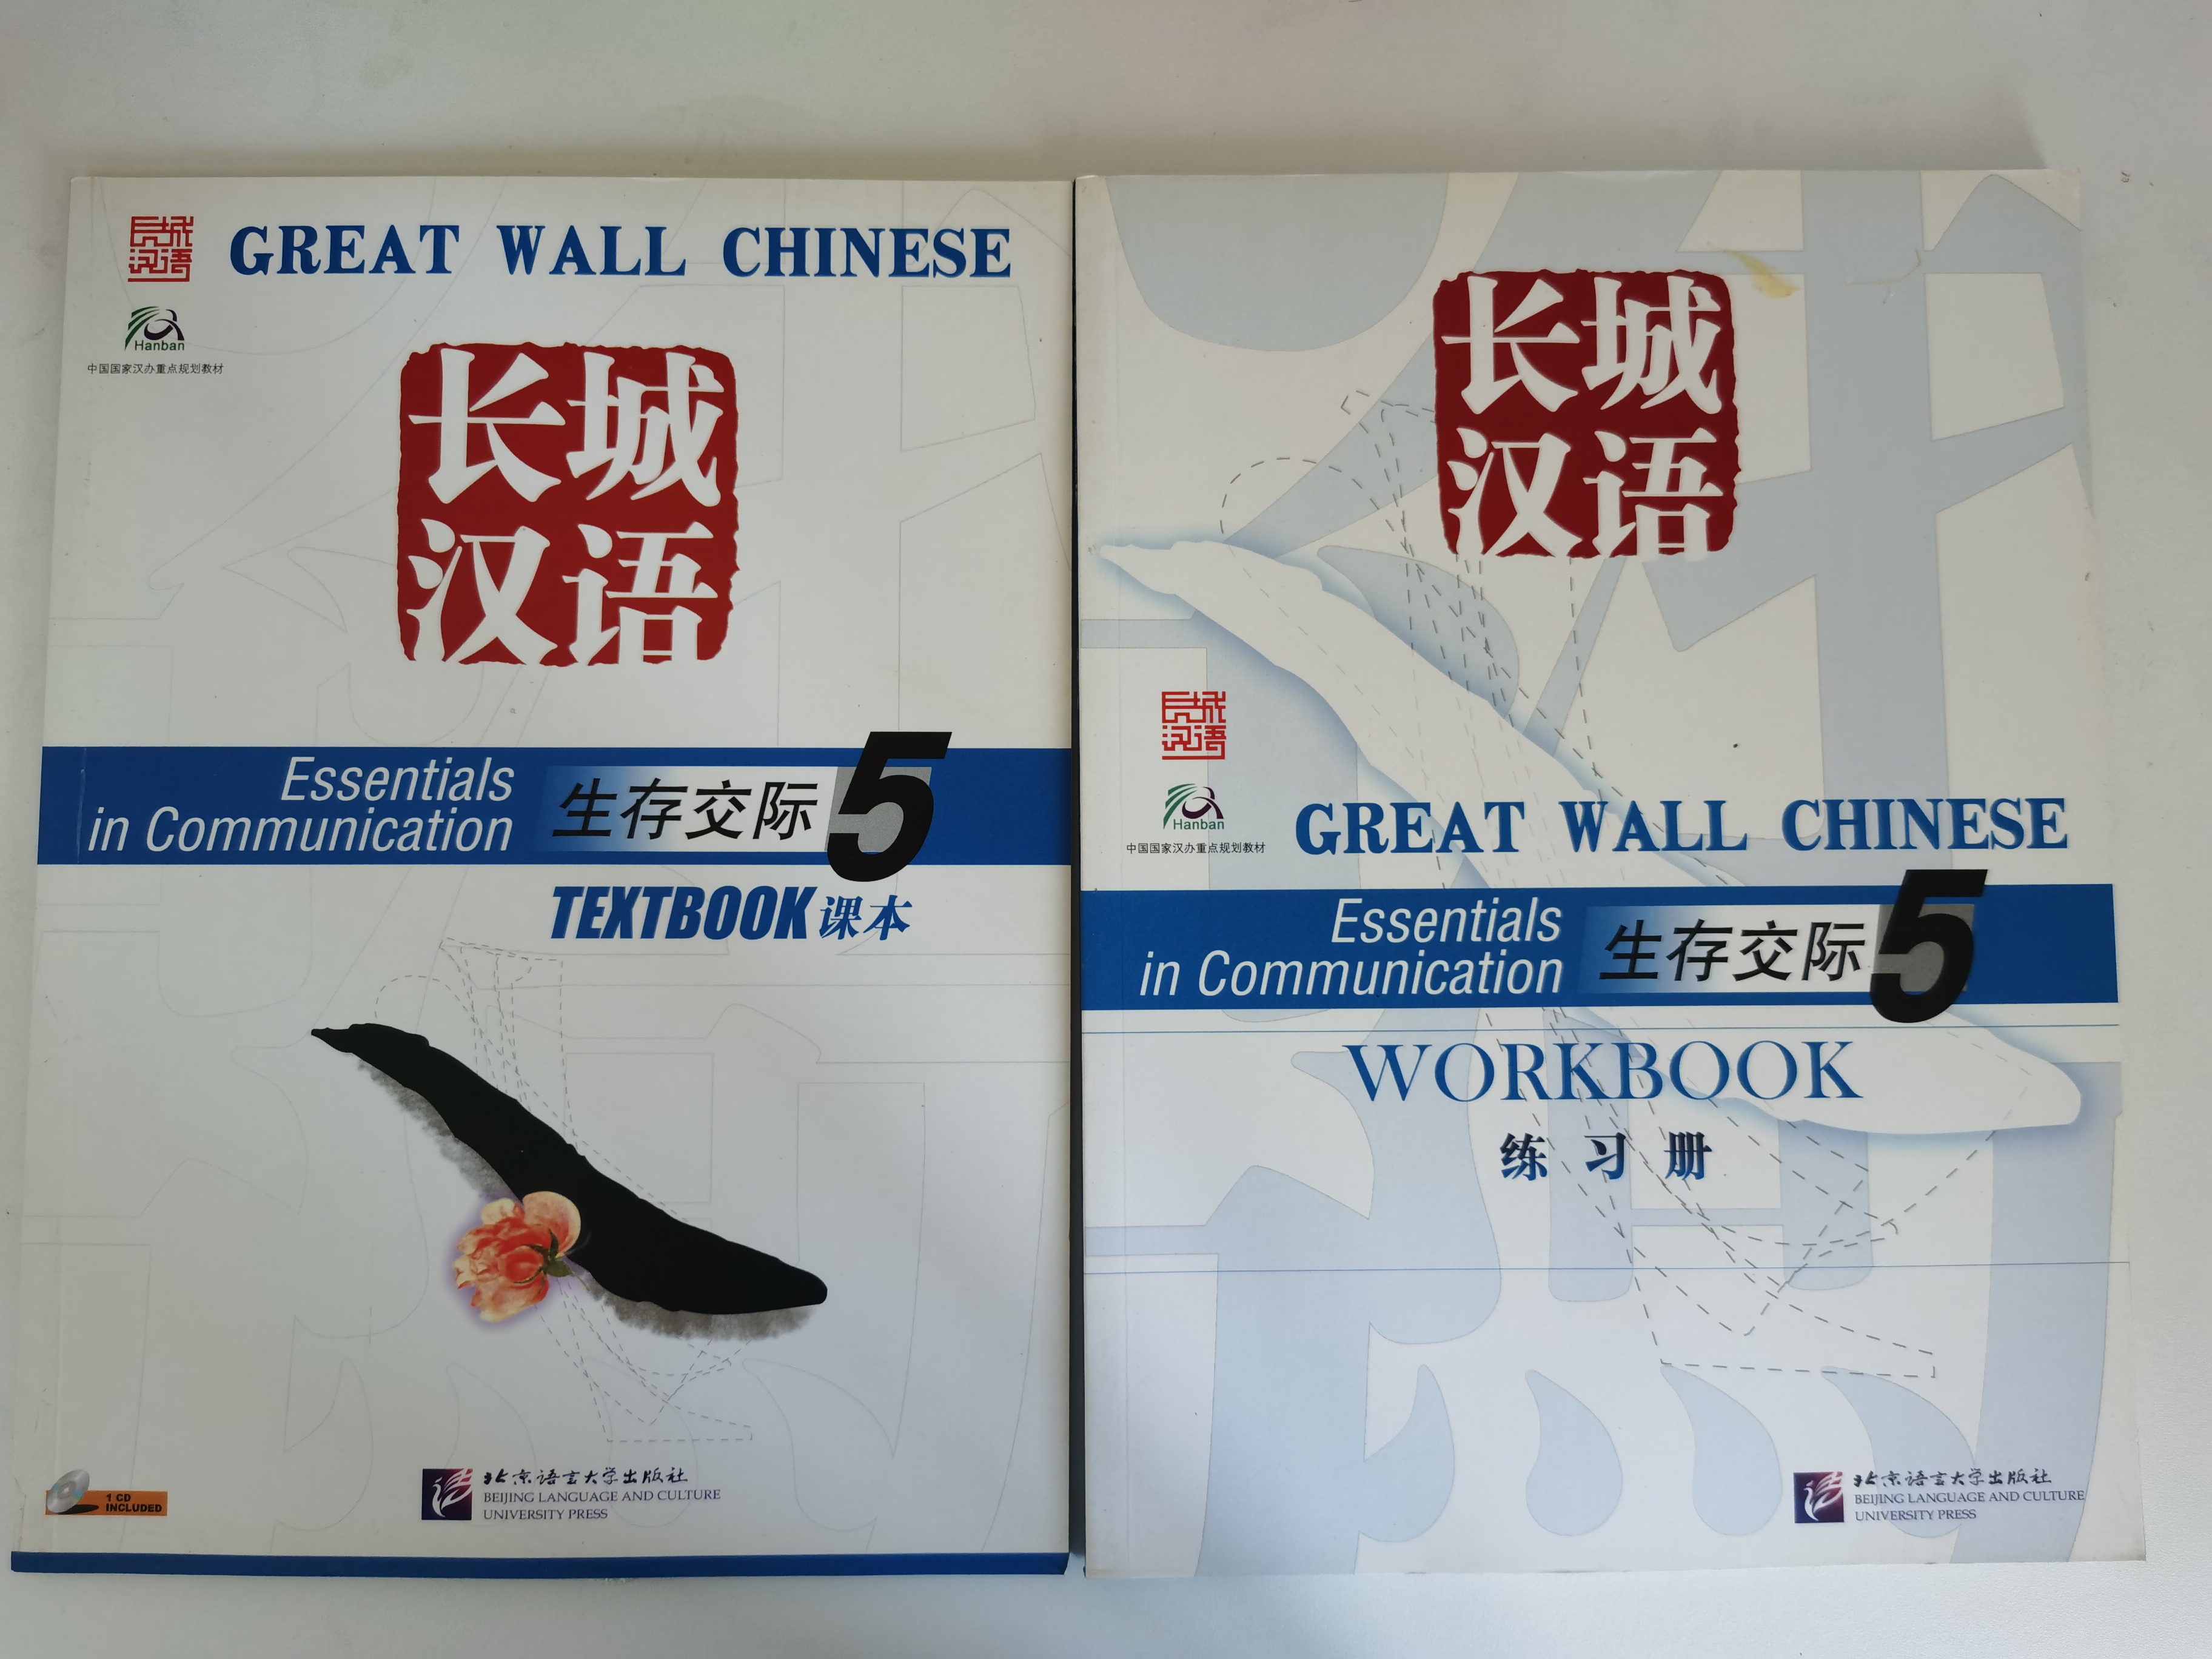 แบบเรียนภาษาจีน 长城汉语5课本+练习册  (Text+Workbook)